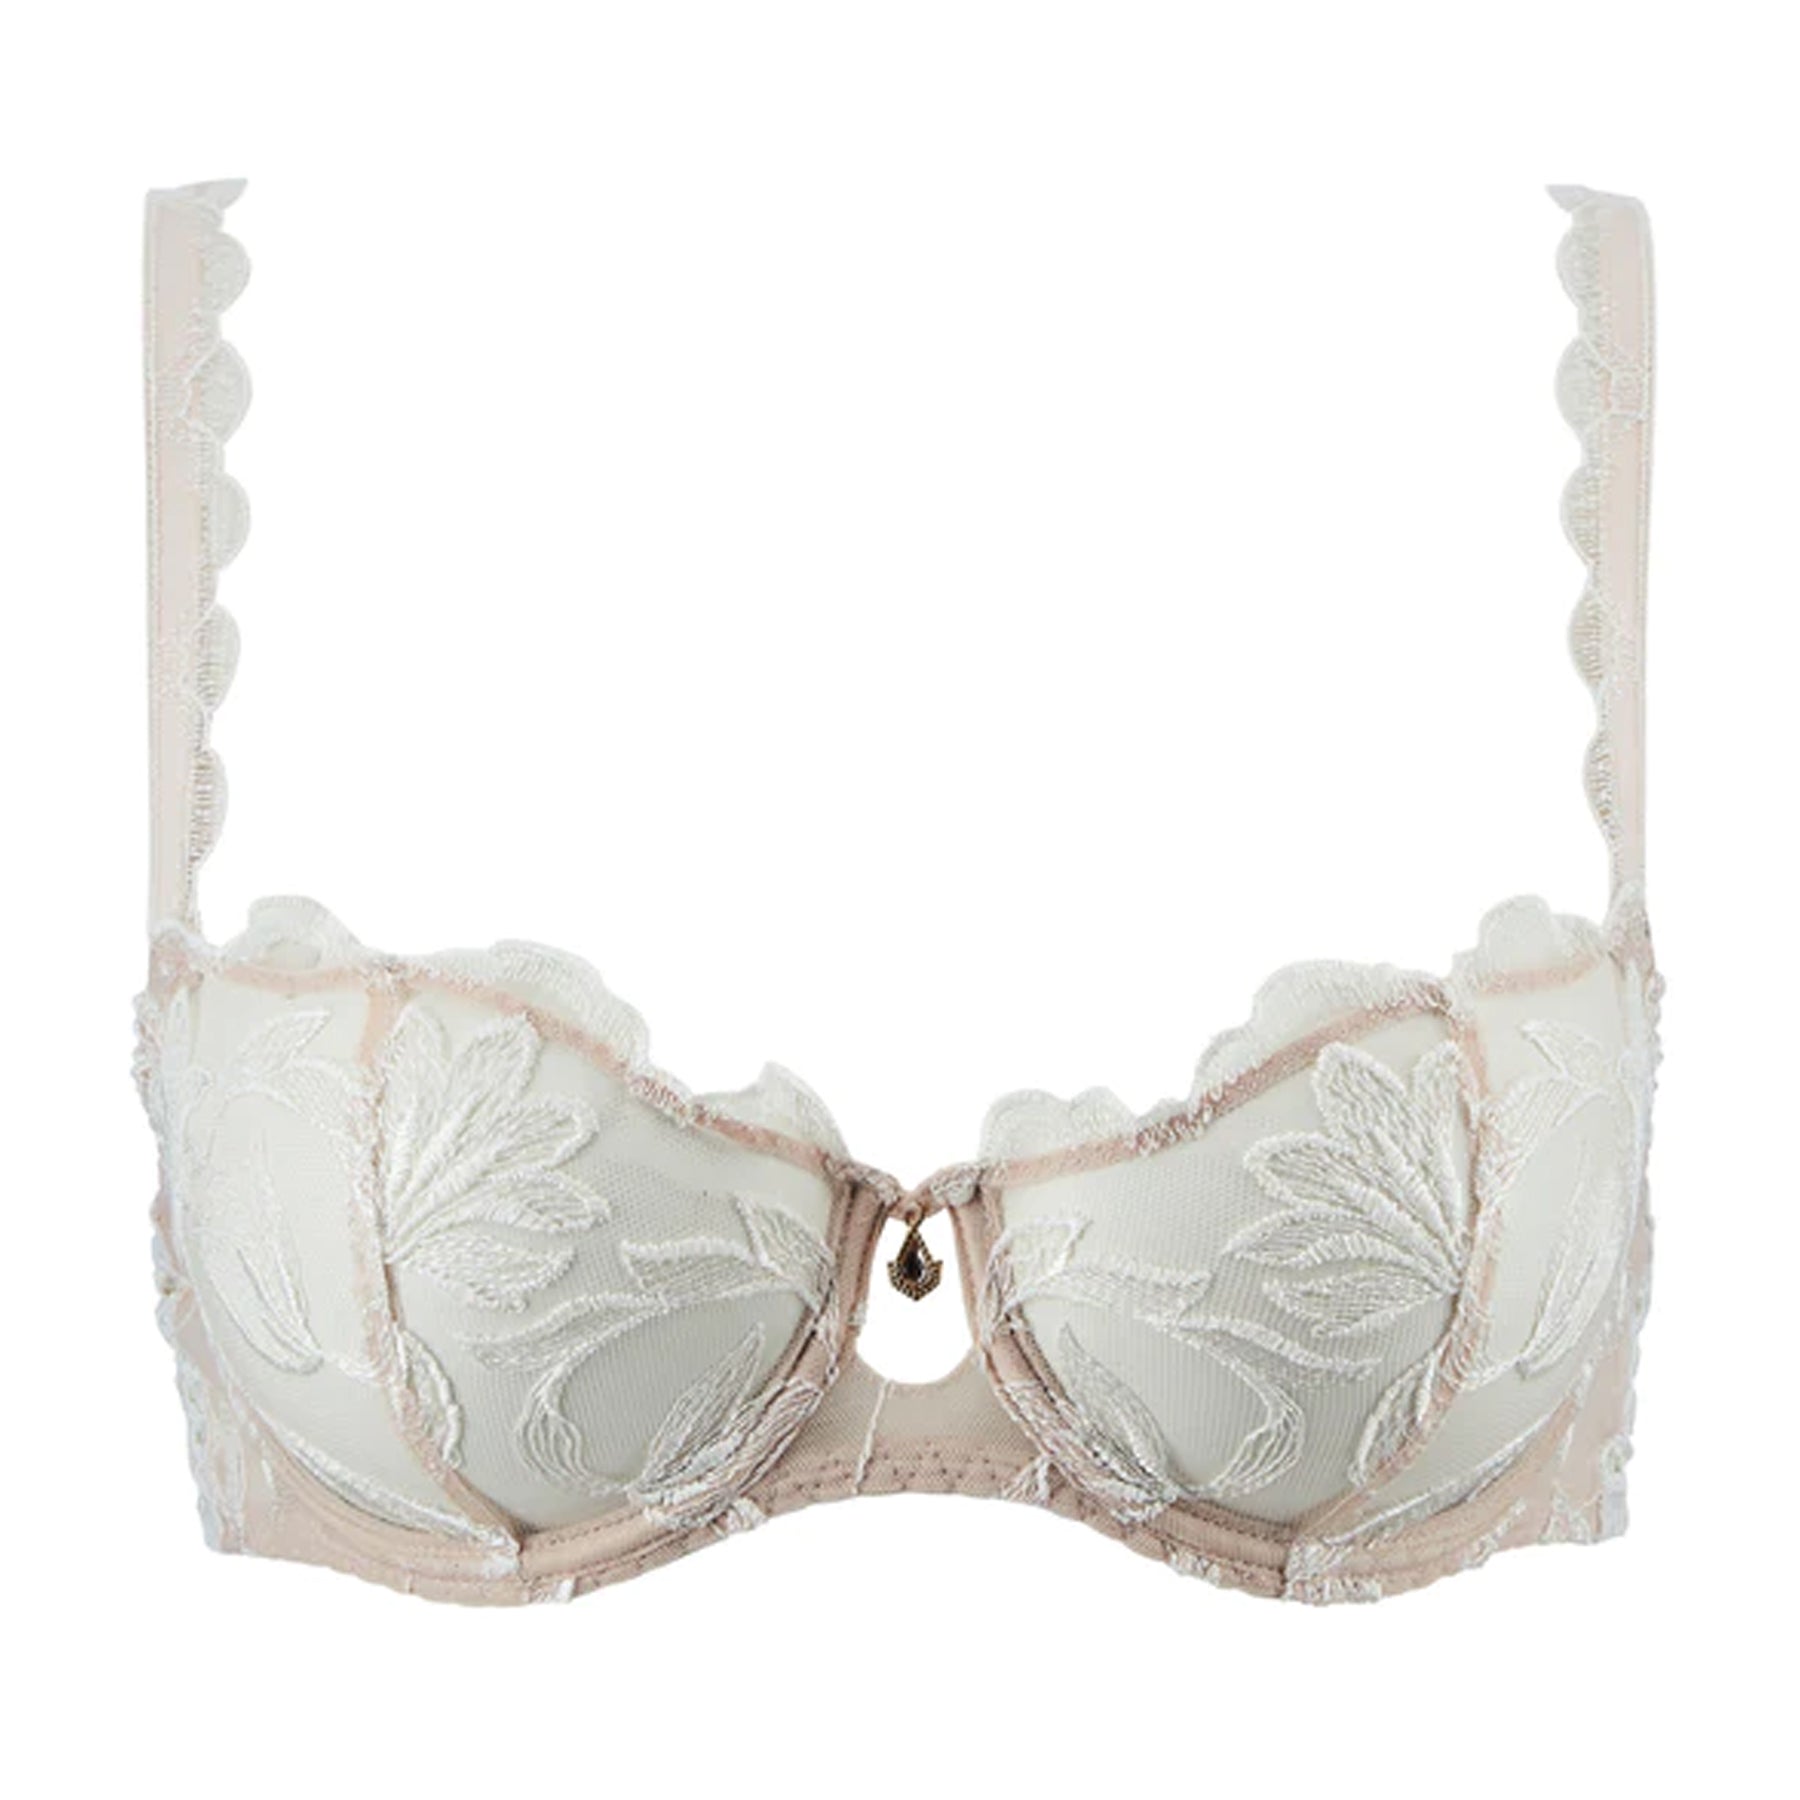 demi-cup bra in lace and pearl - off-white - Undiz